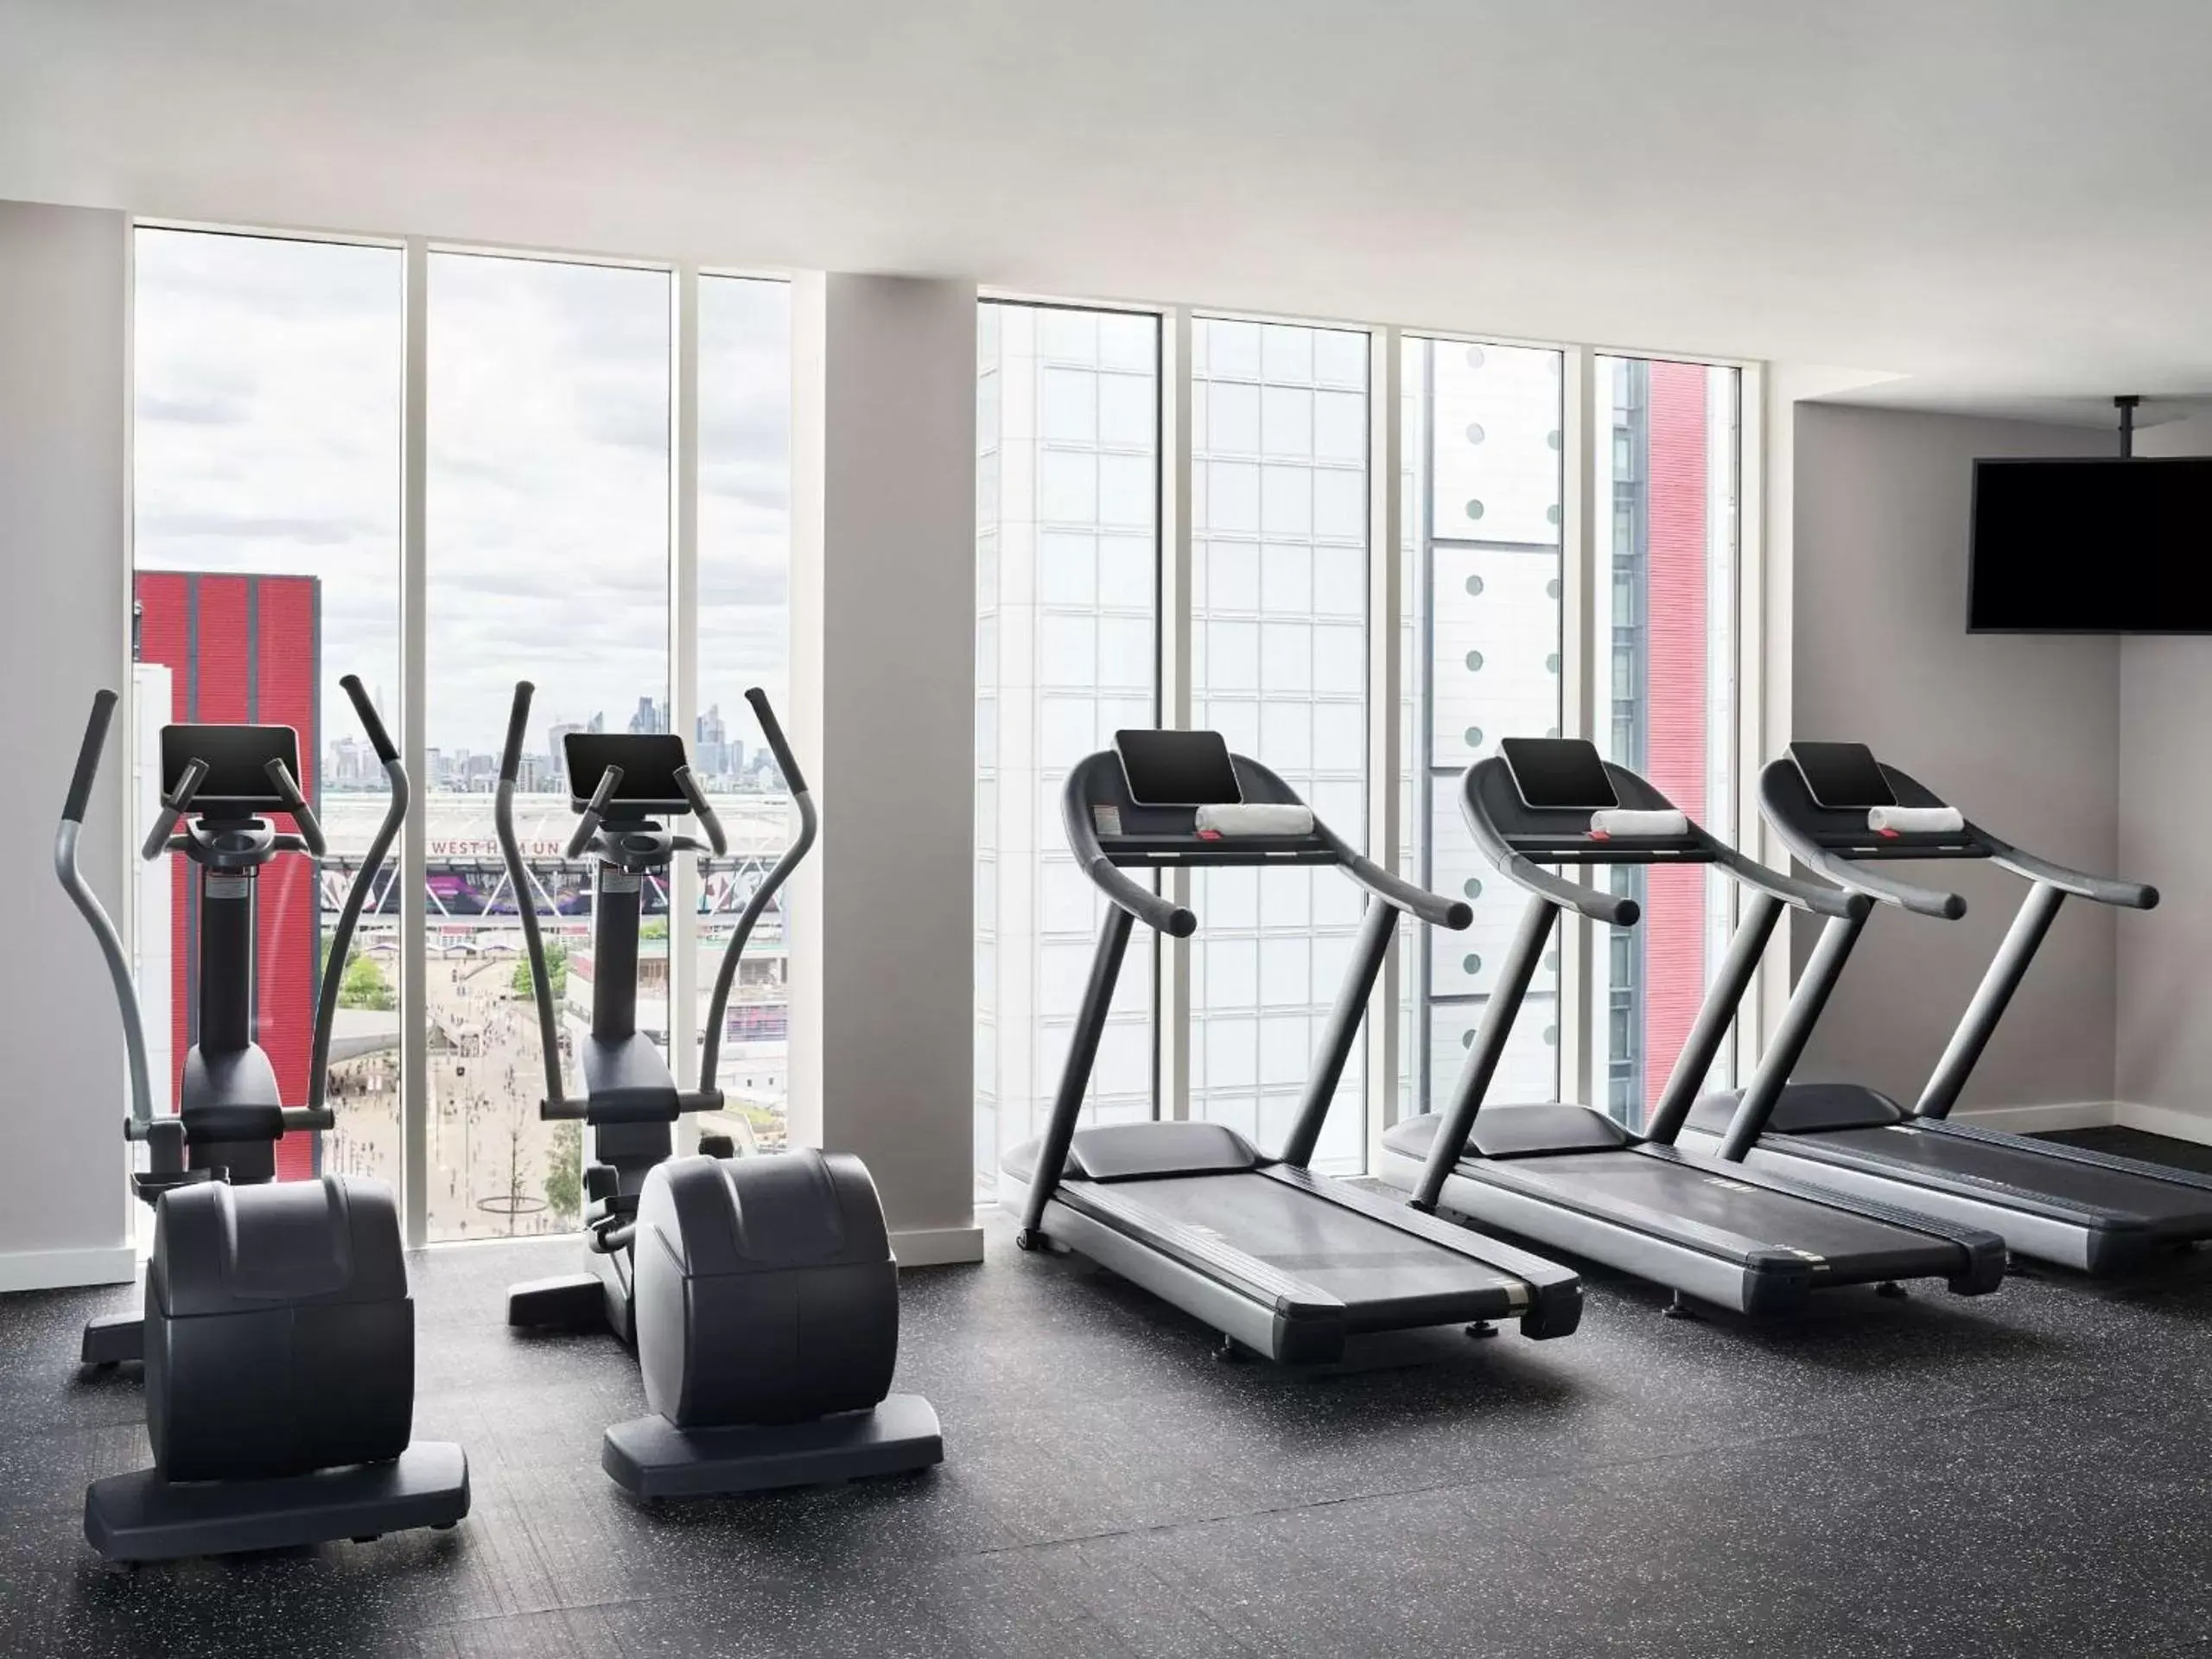 Fitness centre/facilities, Fitness Center/Facilities in Hyatt Regency London Stratford